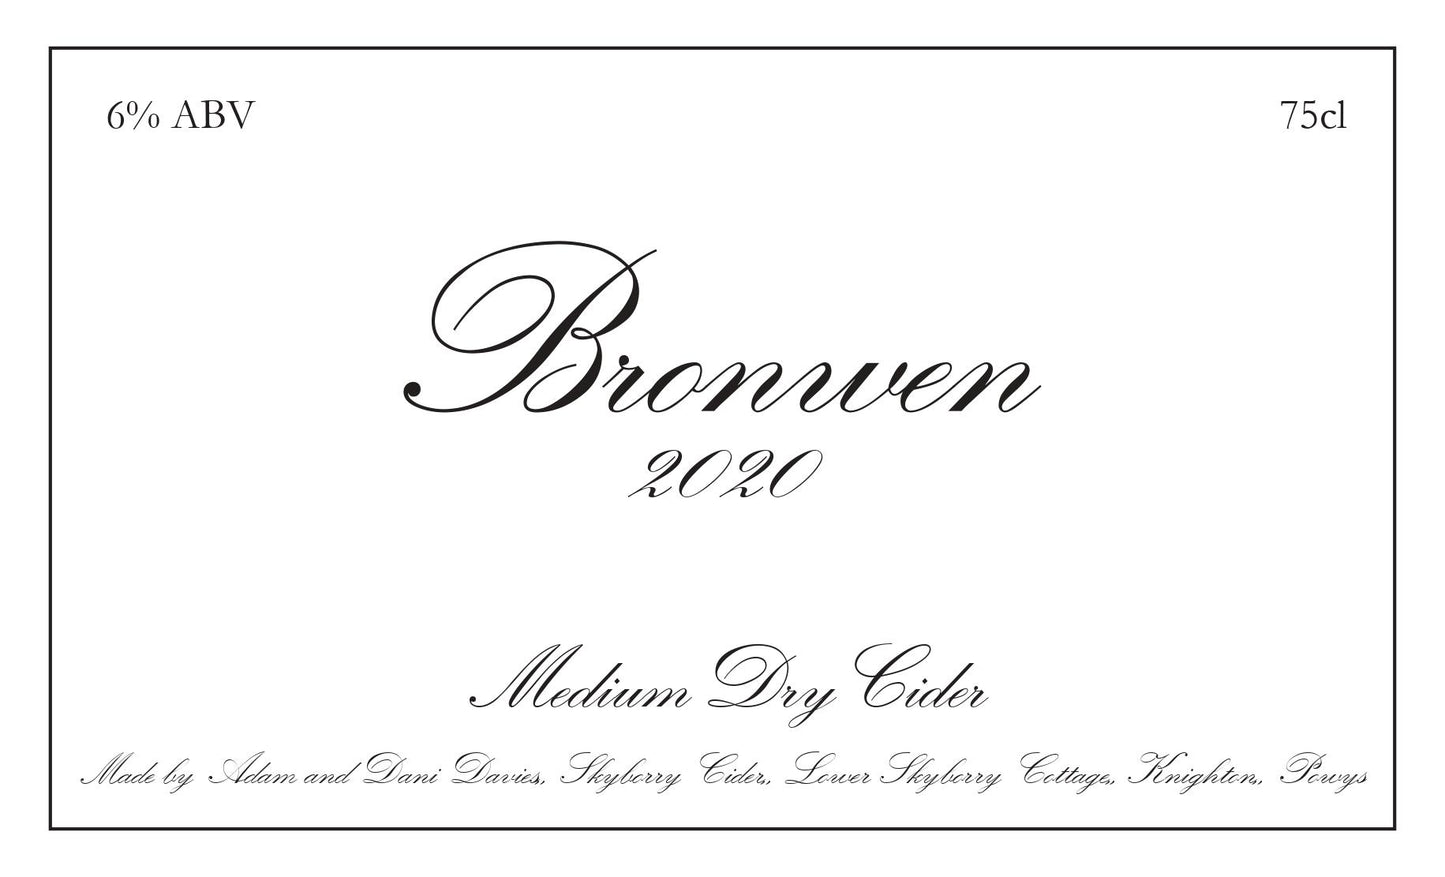 Skyborry Bronwen Cider 2020